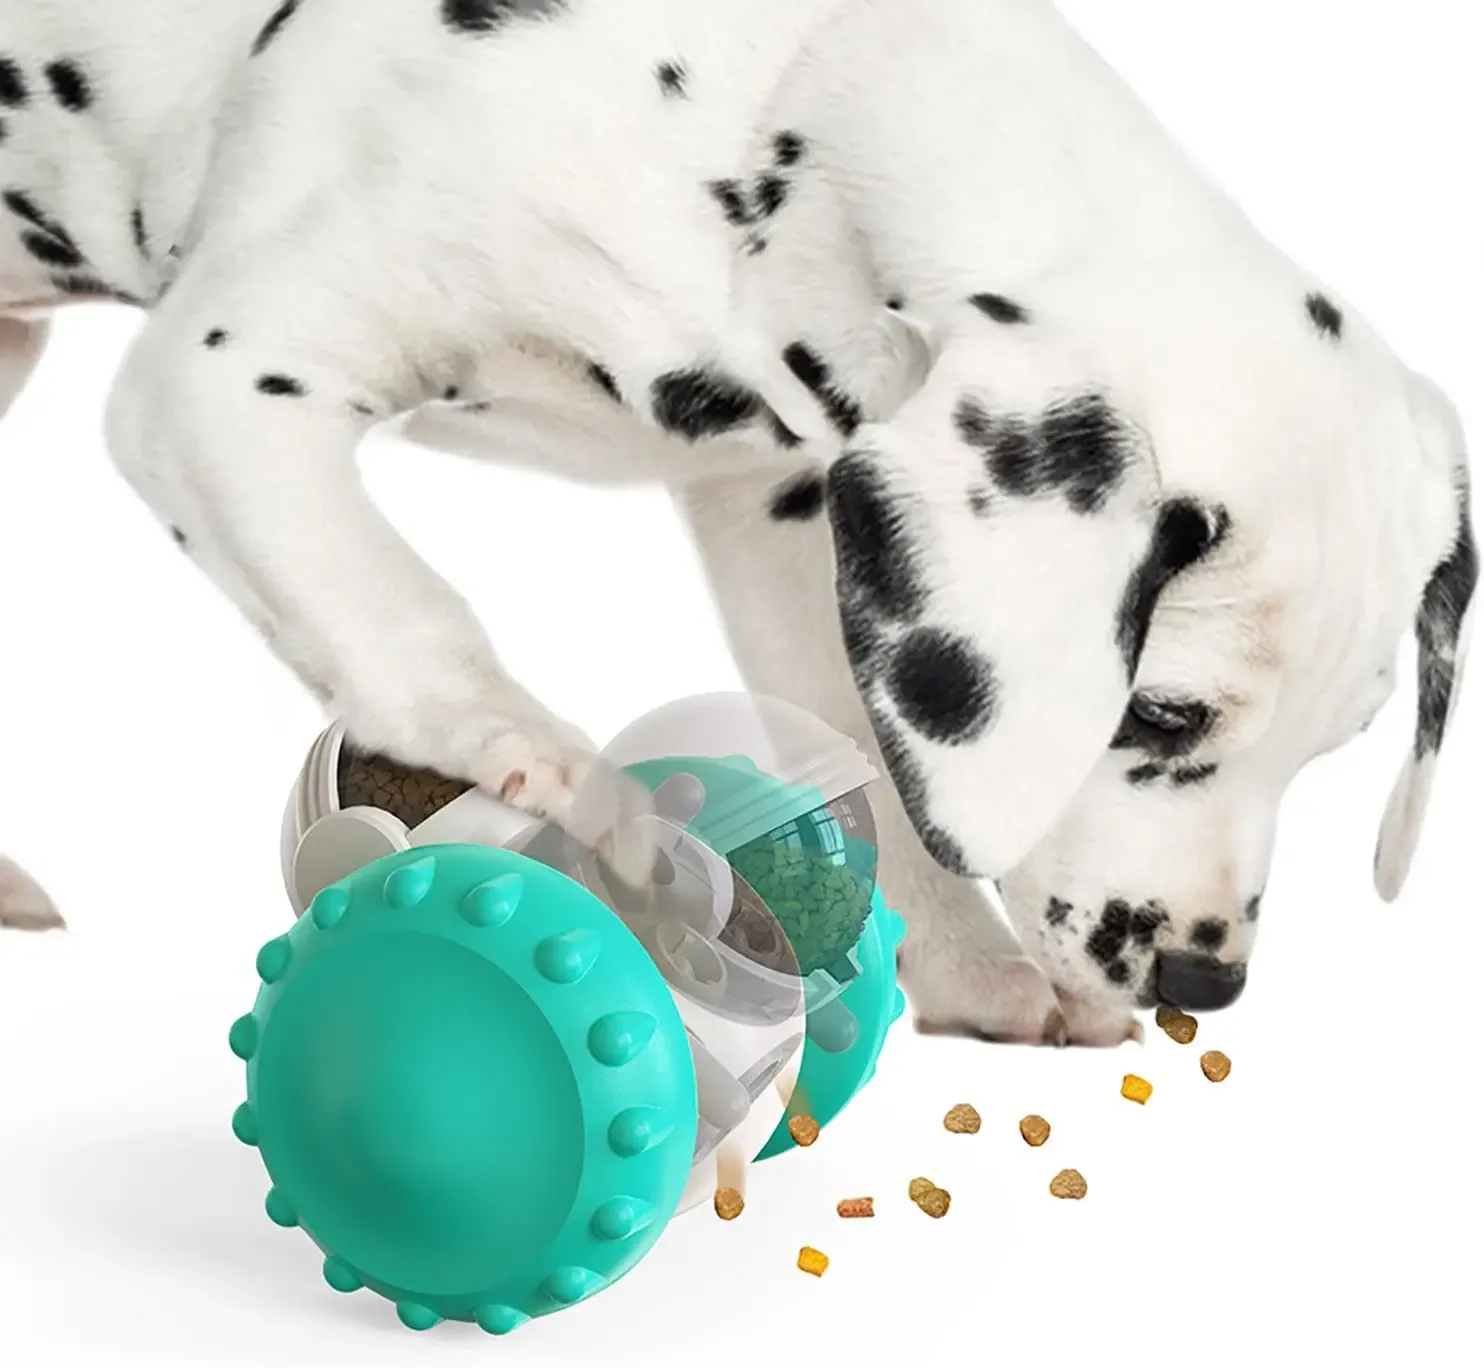 Игрушки Стакан для собак, интерактивная игрушка, увеличивает IQ питомца, медленная игрушка для собак, кормушка для лабрадора, французского бульдога, тренировочный диспенсер для еды